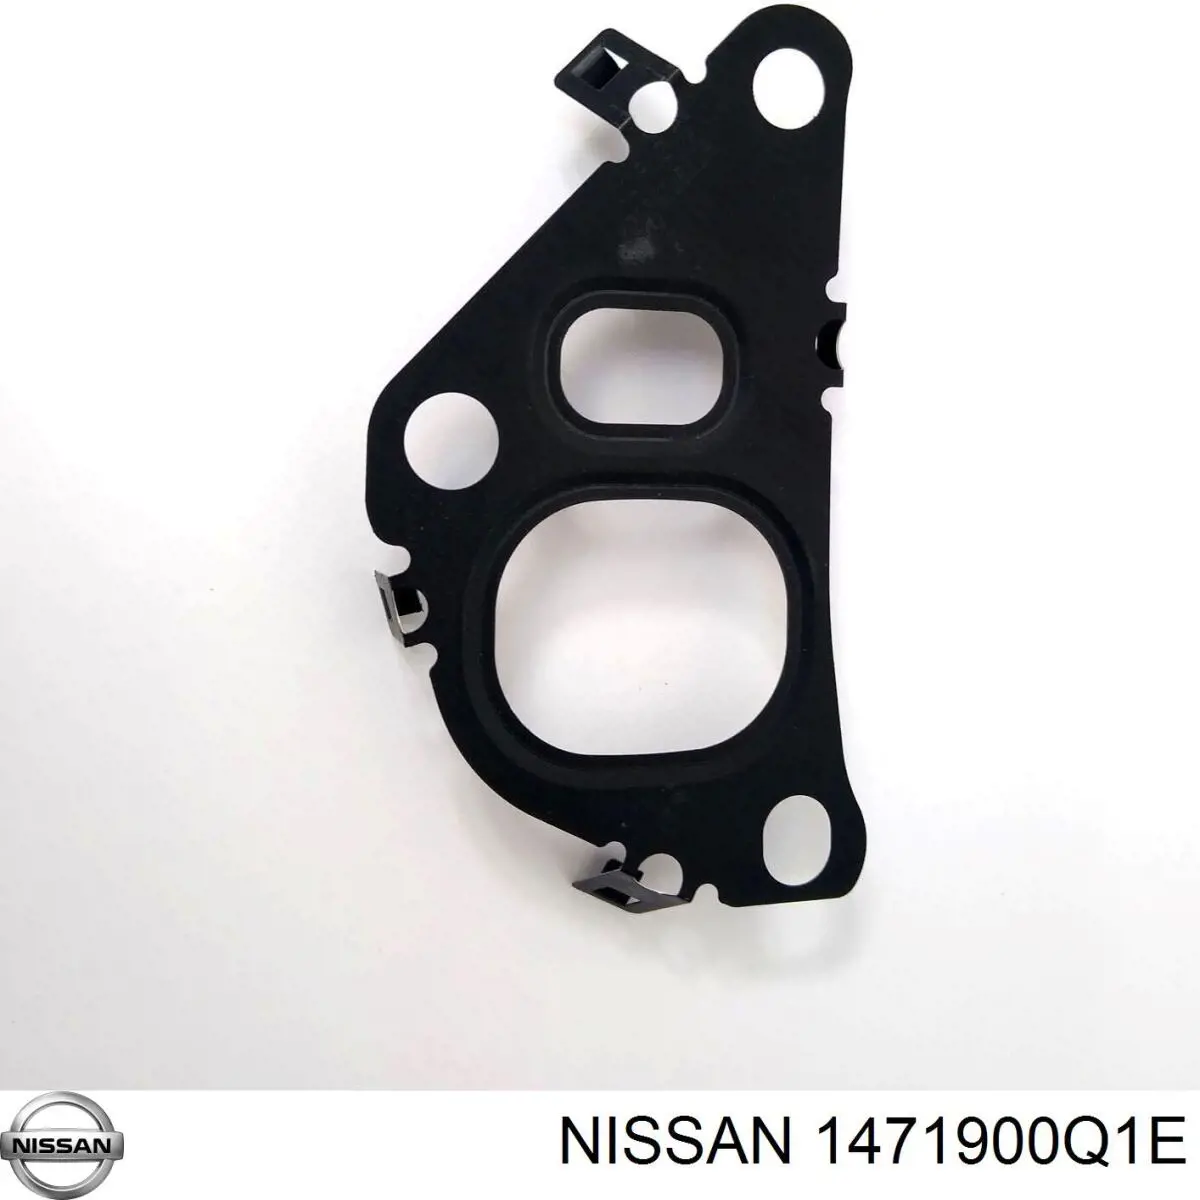 1471900Q1E Nissan junta egr para sistema de recirculacion de gas